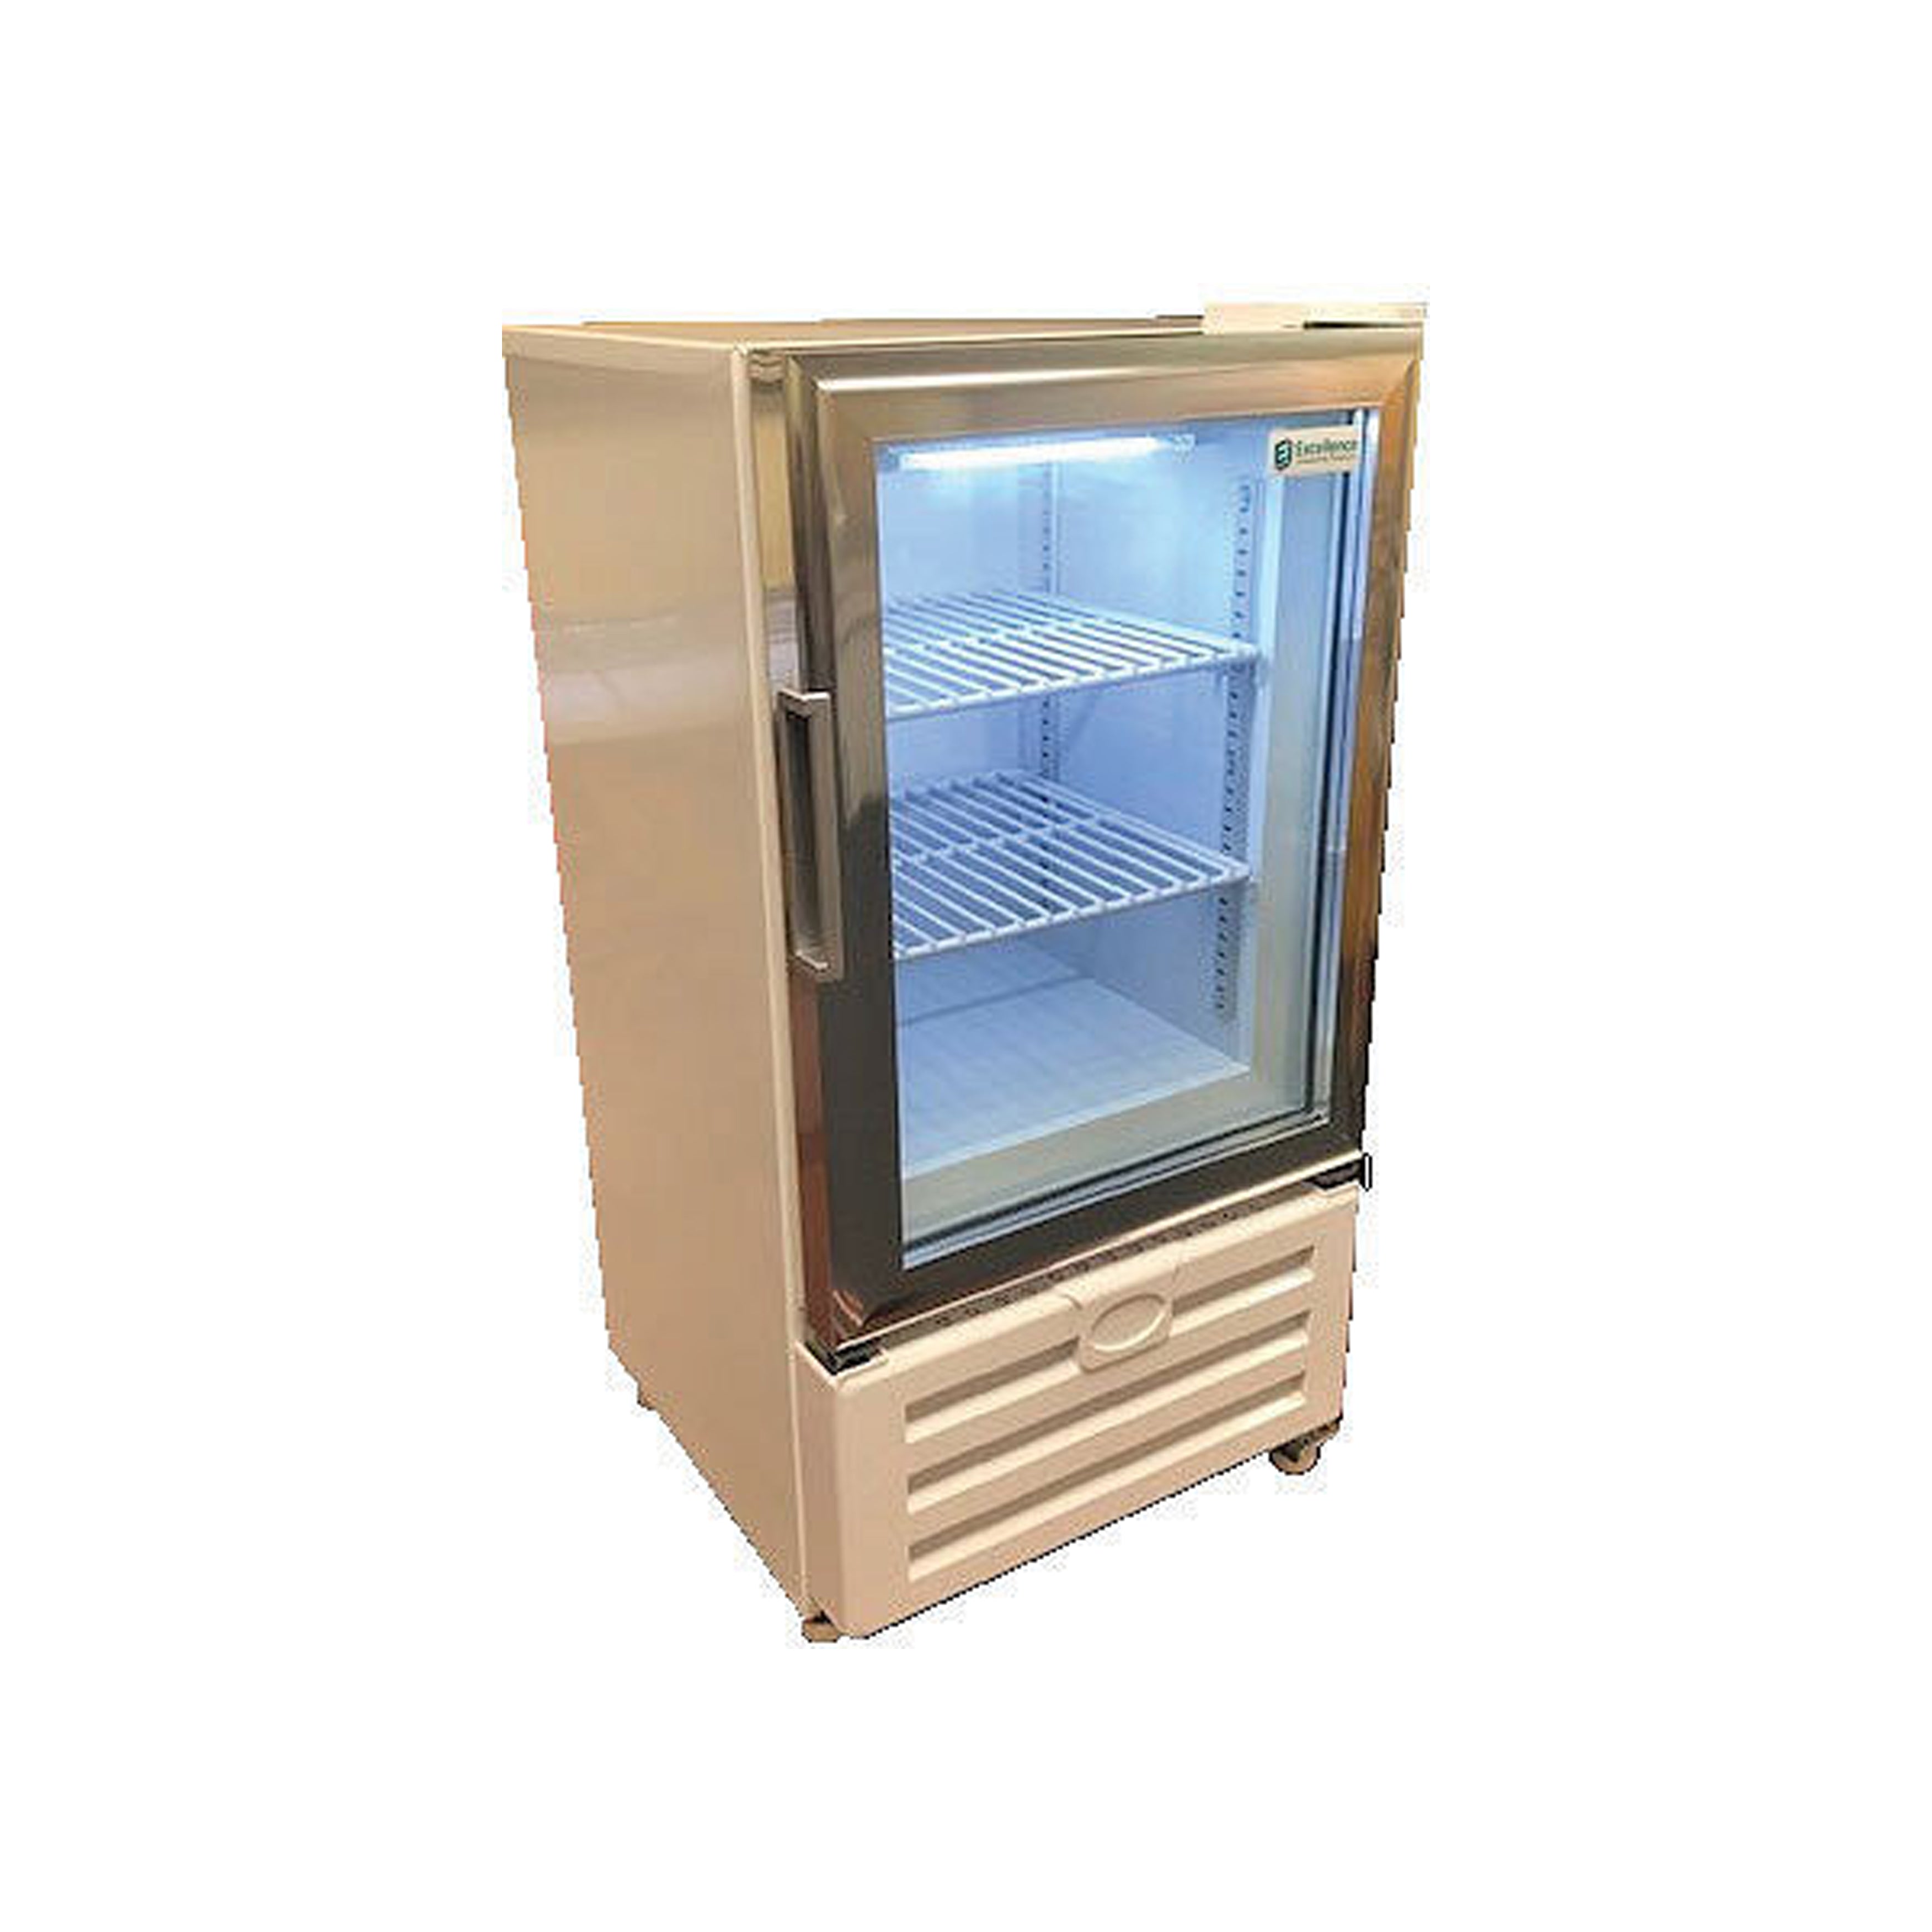 Excellence Industries - CTF-2T, 16" Commercial 1 Glass Door Countertop Merchandiser Freezer 2.0 cu.ft.